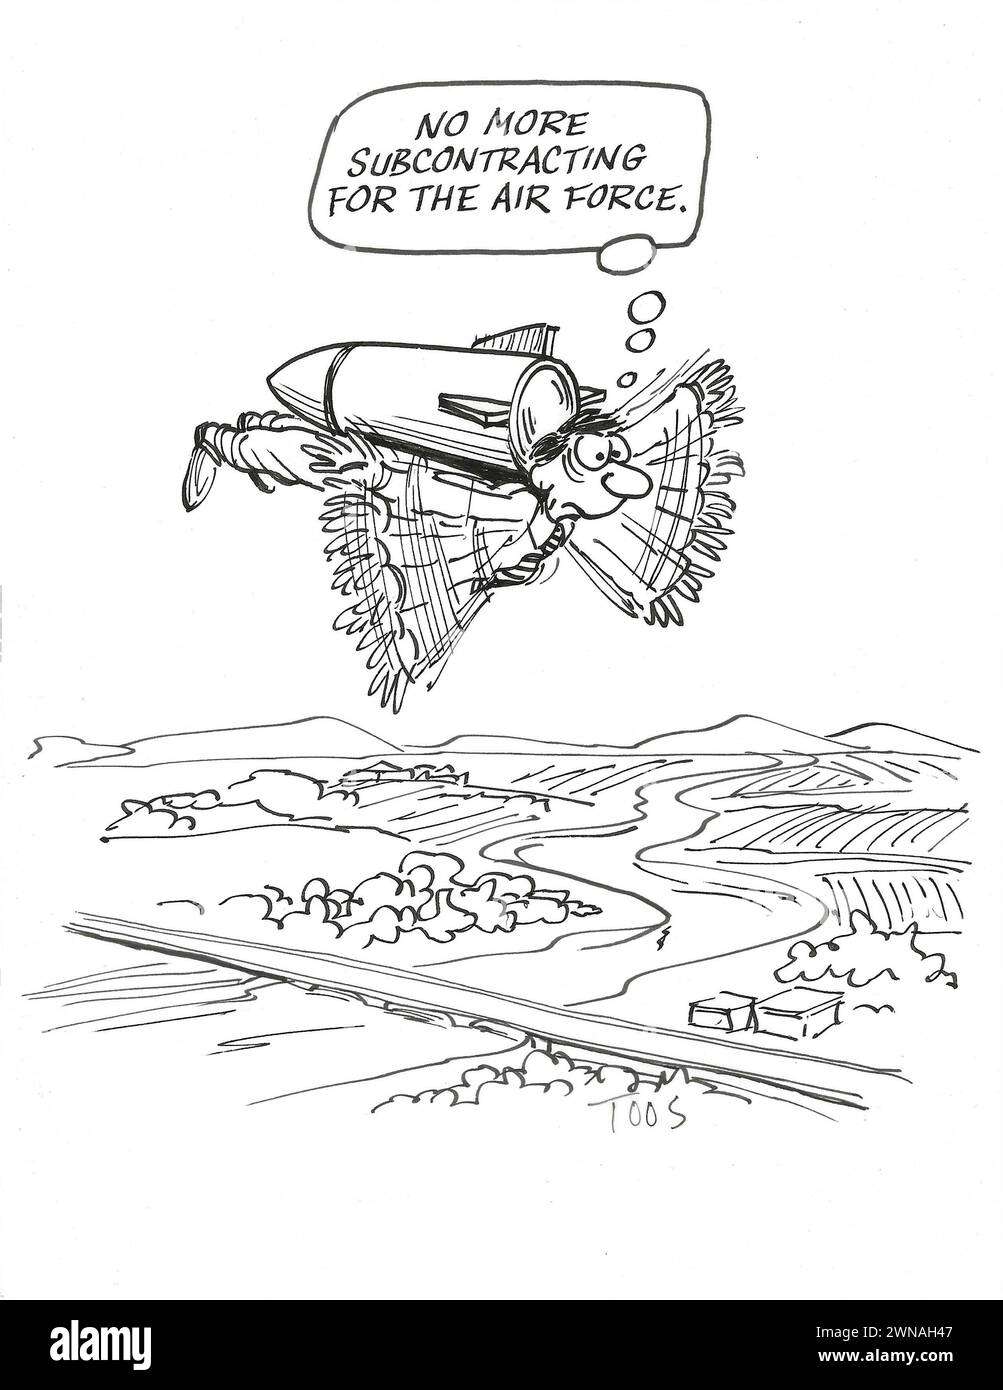 BW Cartoon eines fliegenden Mannes, der eine Bombe zum Ziel trägt, denkt er, dass er keine Unteraufträge mehr an die Luftwaffe vergeben wird. Stockfoto